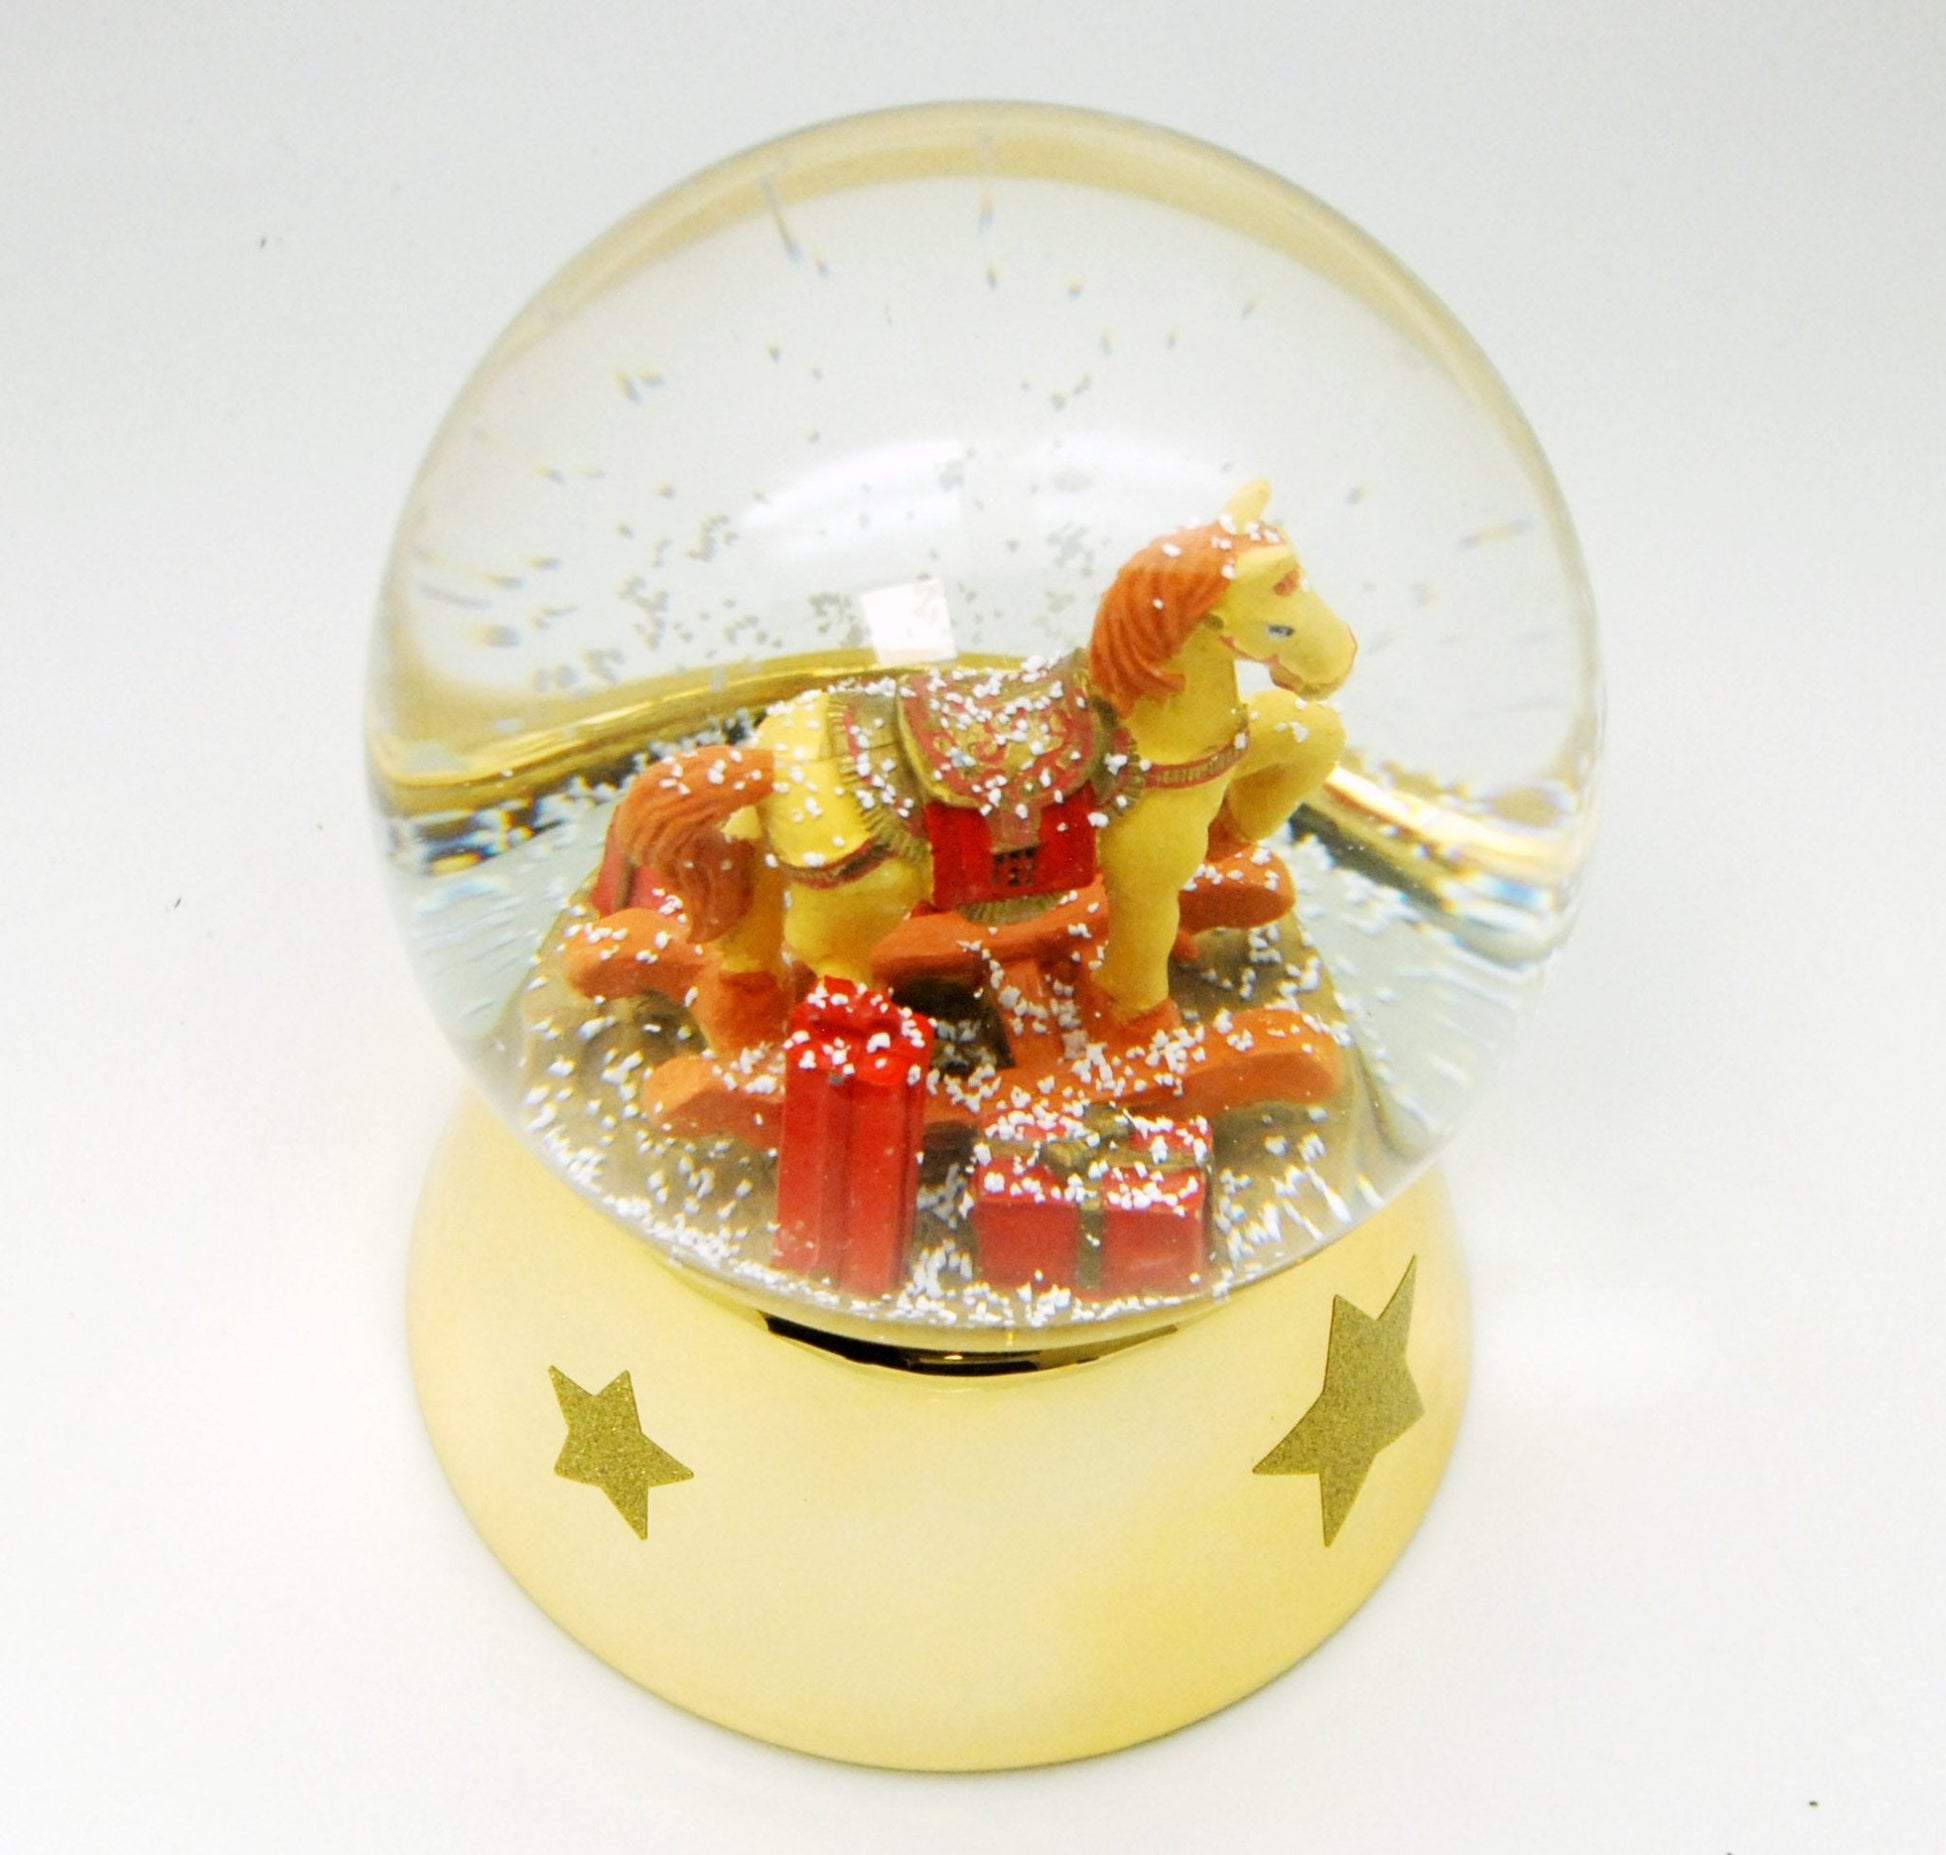 Schneekugel Schaukelpferd rot gold mit Geschenken Sockel gold mit Sternen mit Spieluhr 12 cm Durchmesser - Schneekugelhaus